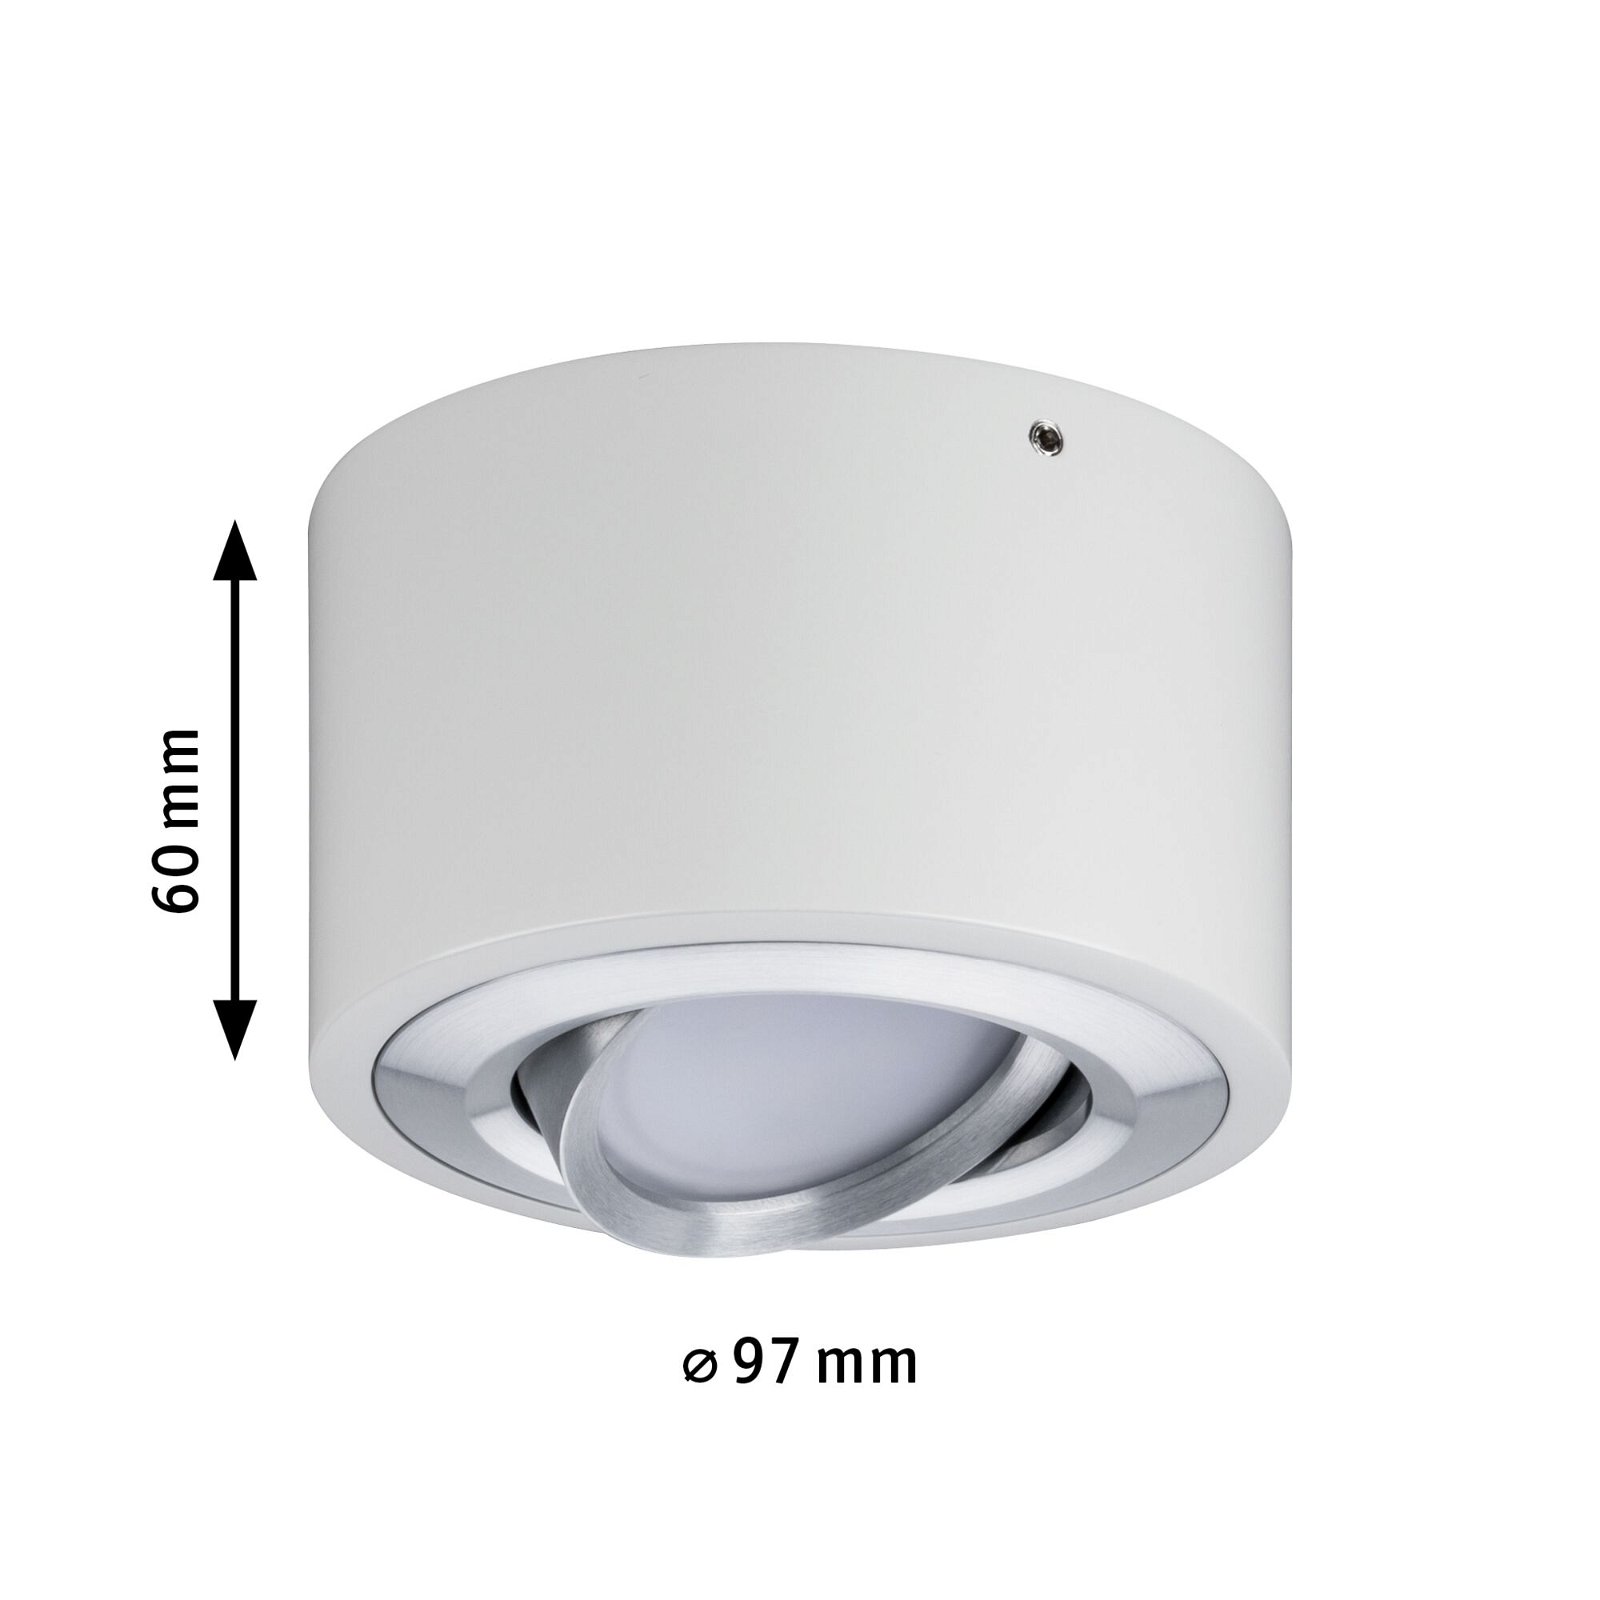 Wandleuchte BIDO für außen Aluminium schwarz matt Downlight LED Lampe weiß 3